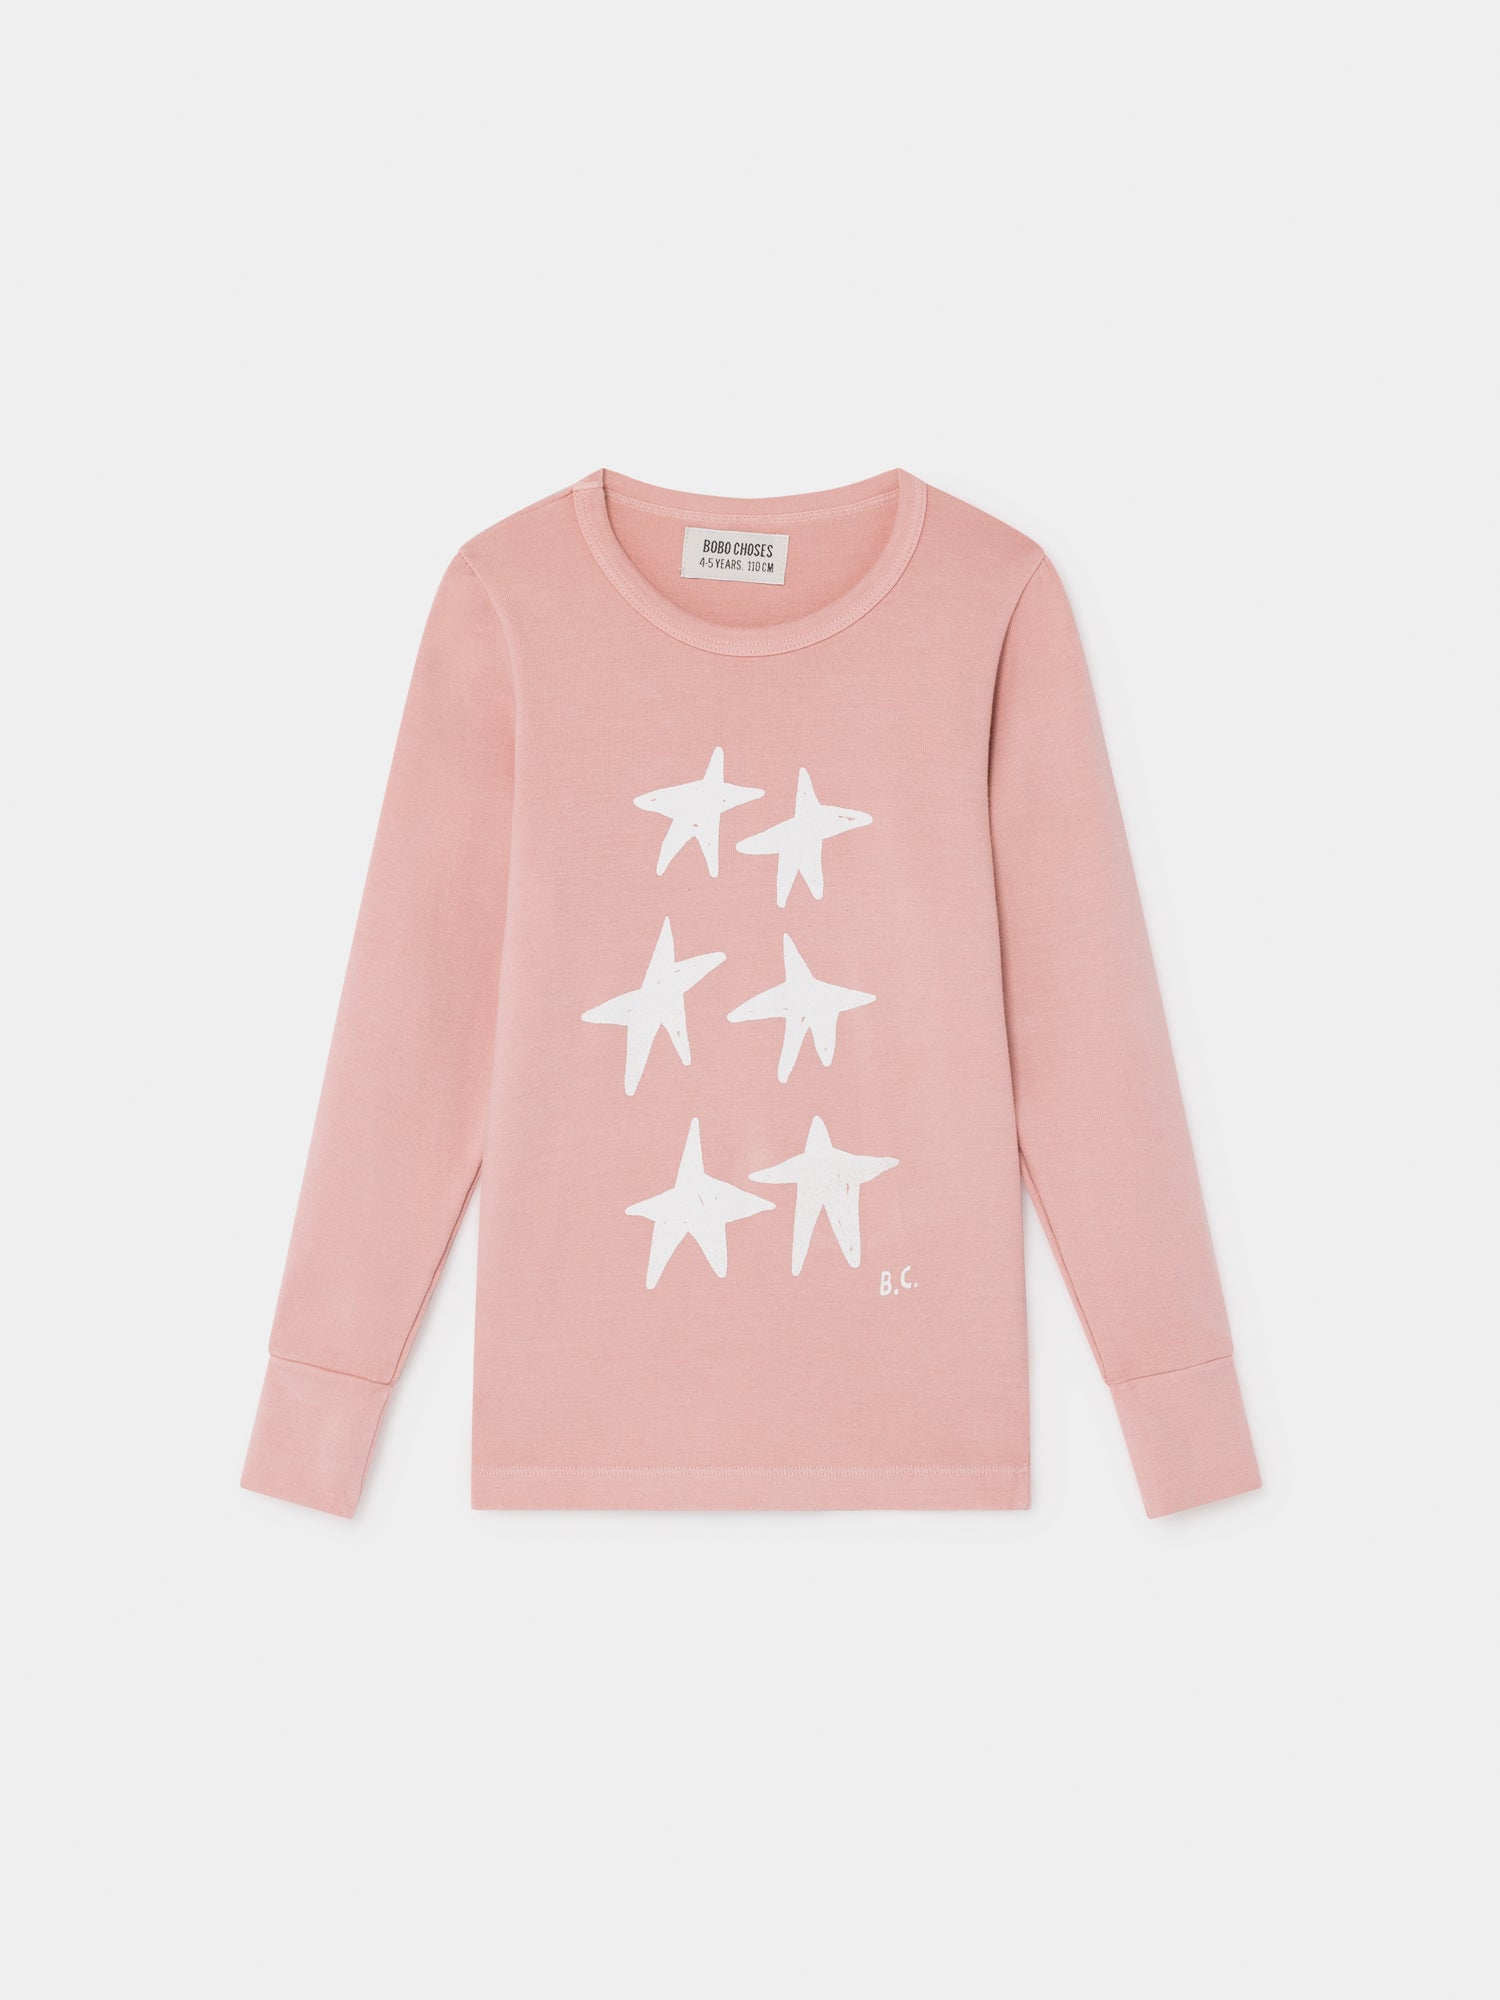 Girls Pink Star Long Sleeve Cotton T-Shirt